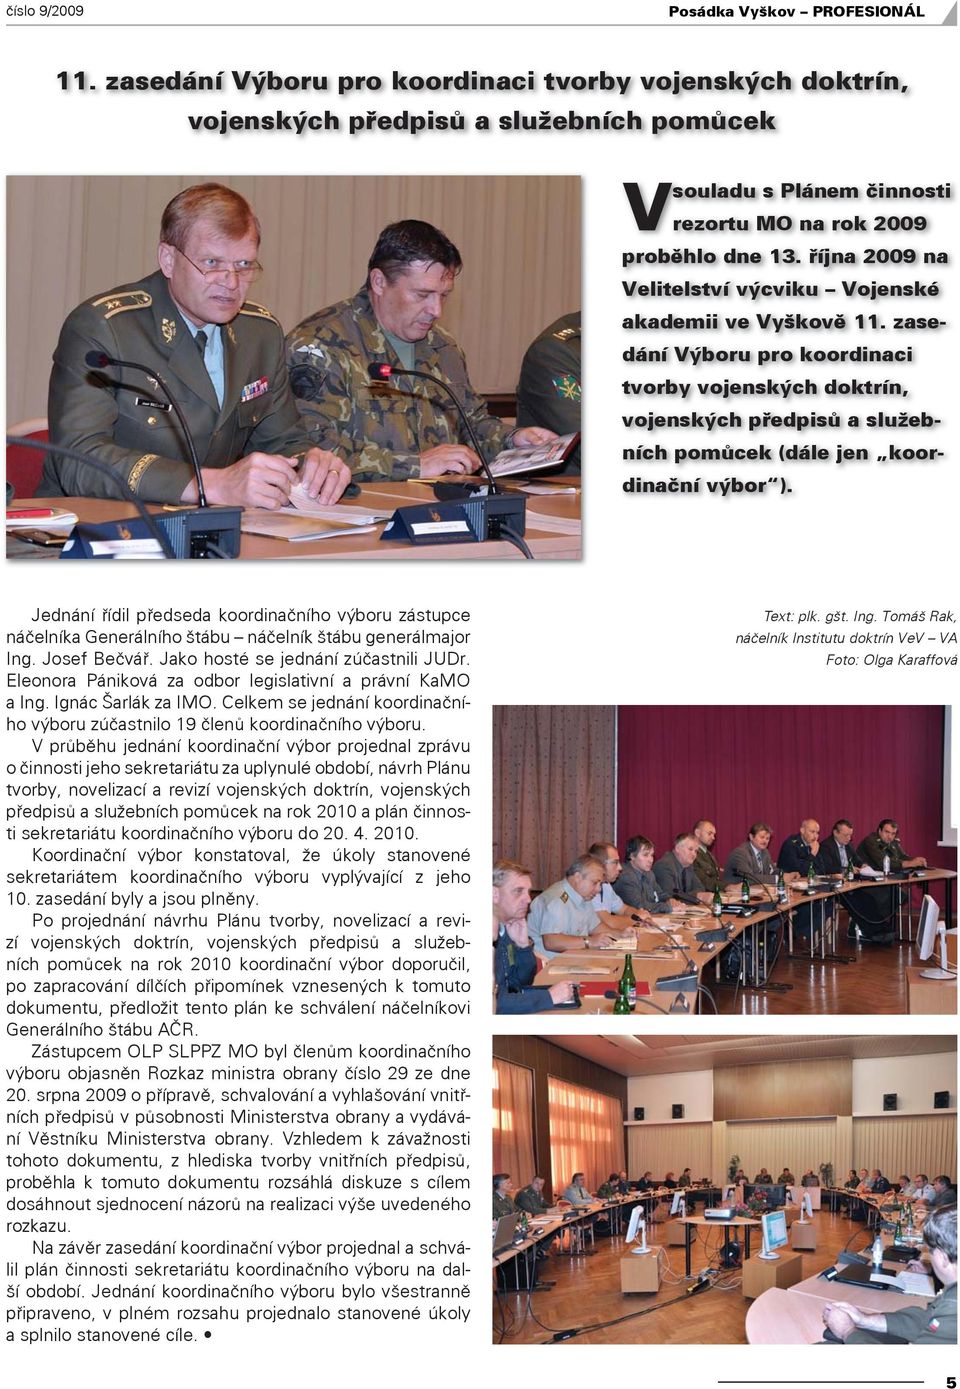 října 2009 na Velitelství výcviku Vojenské akademii ve Vyškově 11. zasedání Výboru pro koordinaci tvorby vojenských doktrín, vojenských předpisů a služebních pomůcek (dále jen koordinační výbor ).